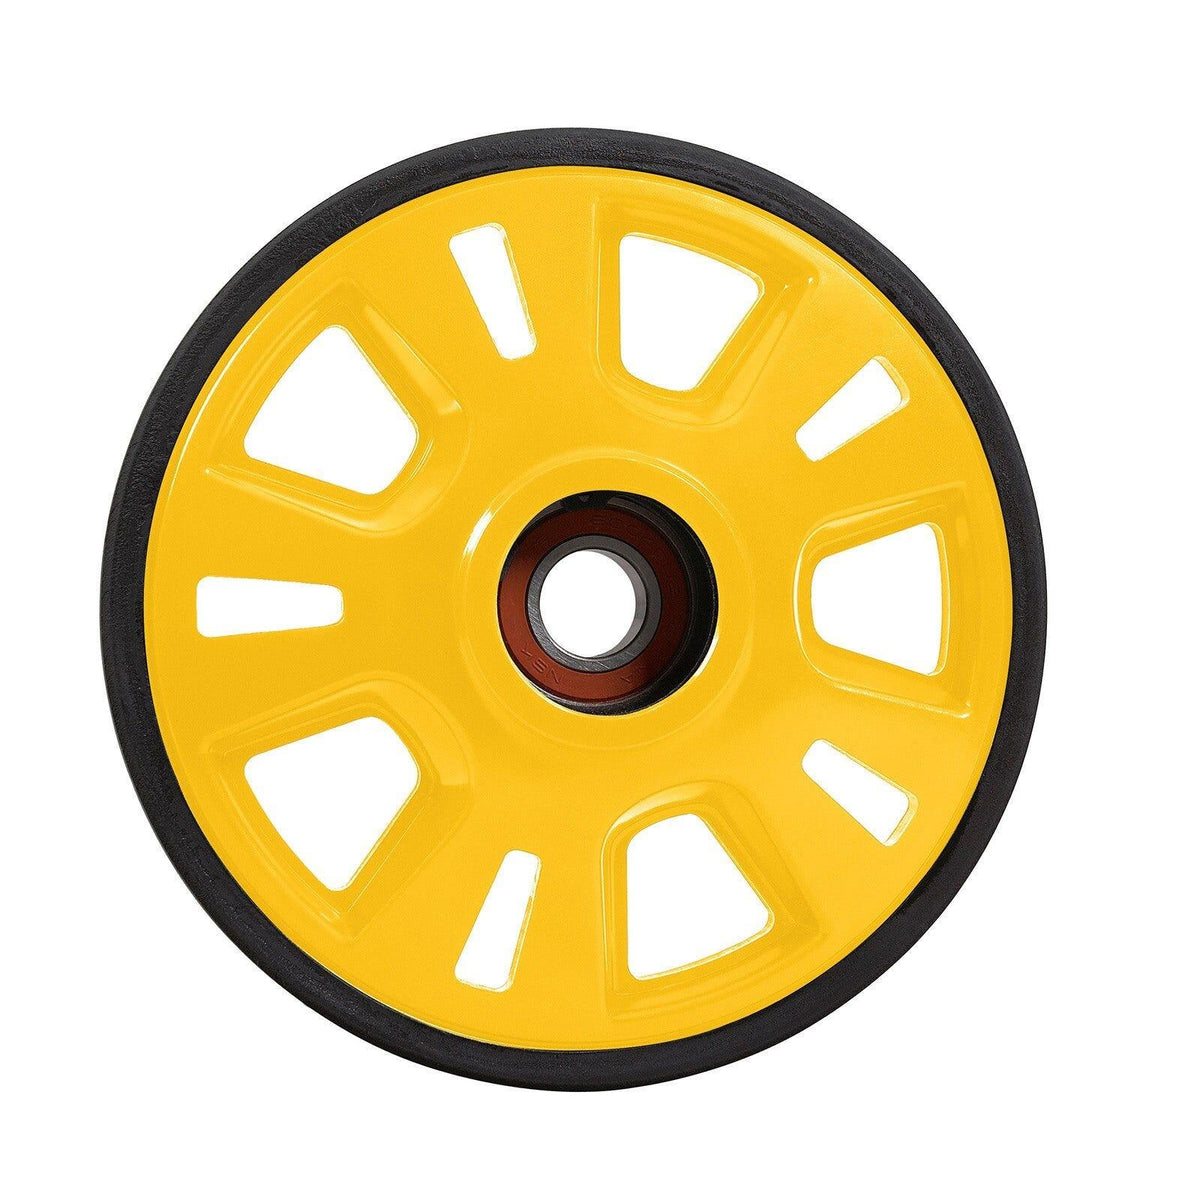 Lightweight Wheel - 180 mm - Factory Recreation